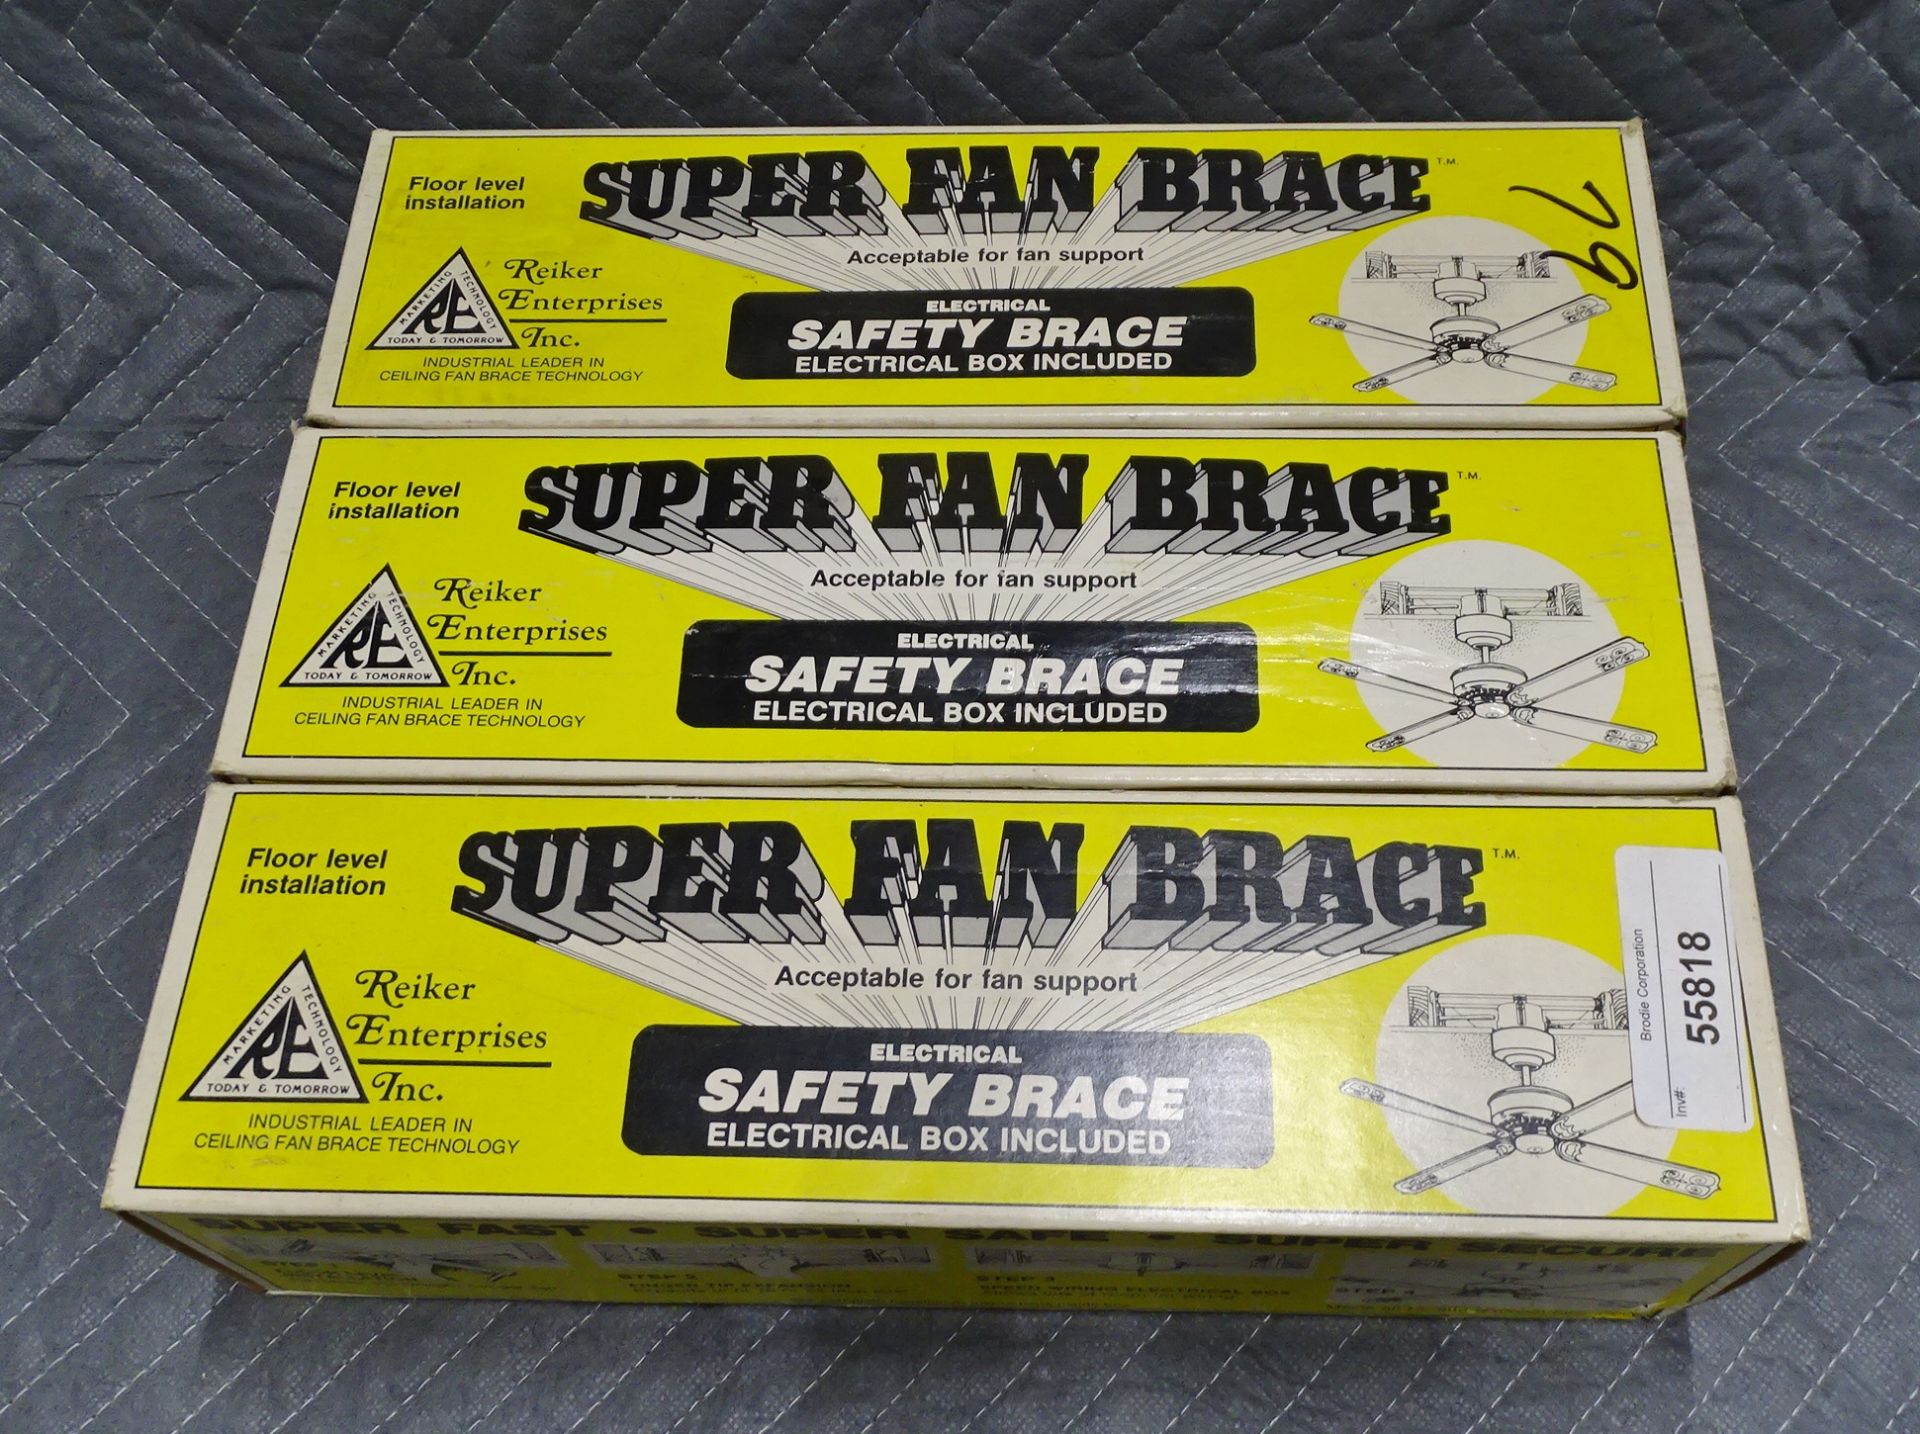 SUPER FAN BRACE FAN BRACES - Image 2 of 3